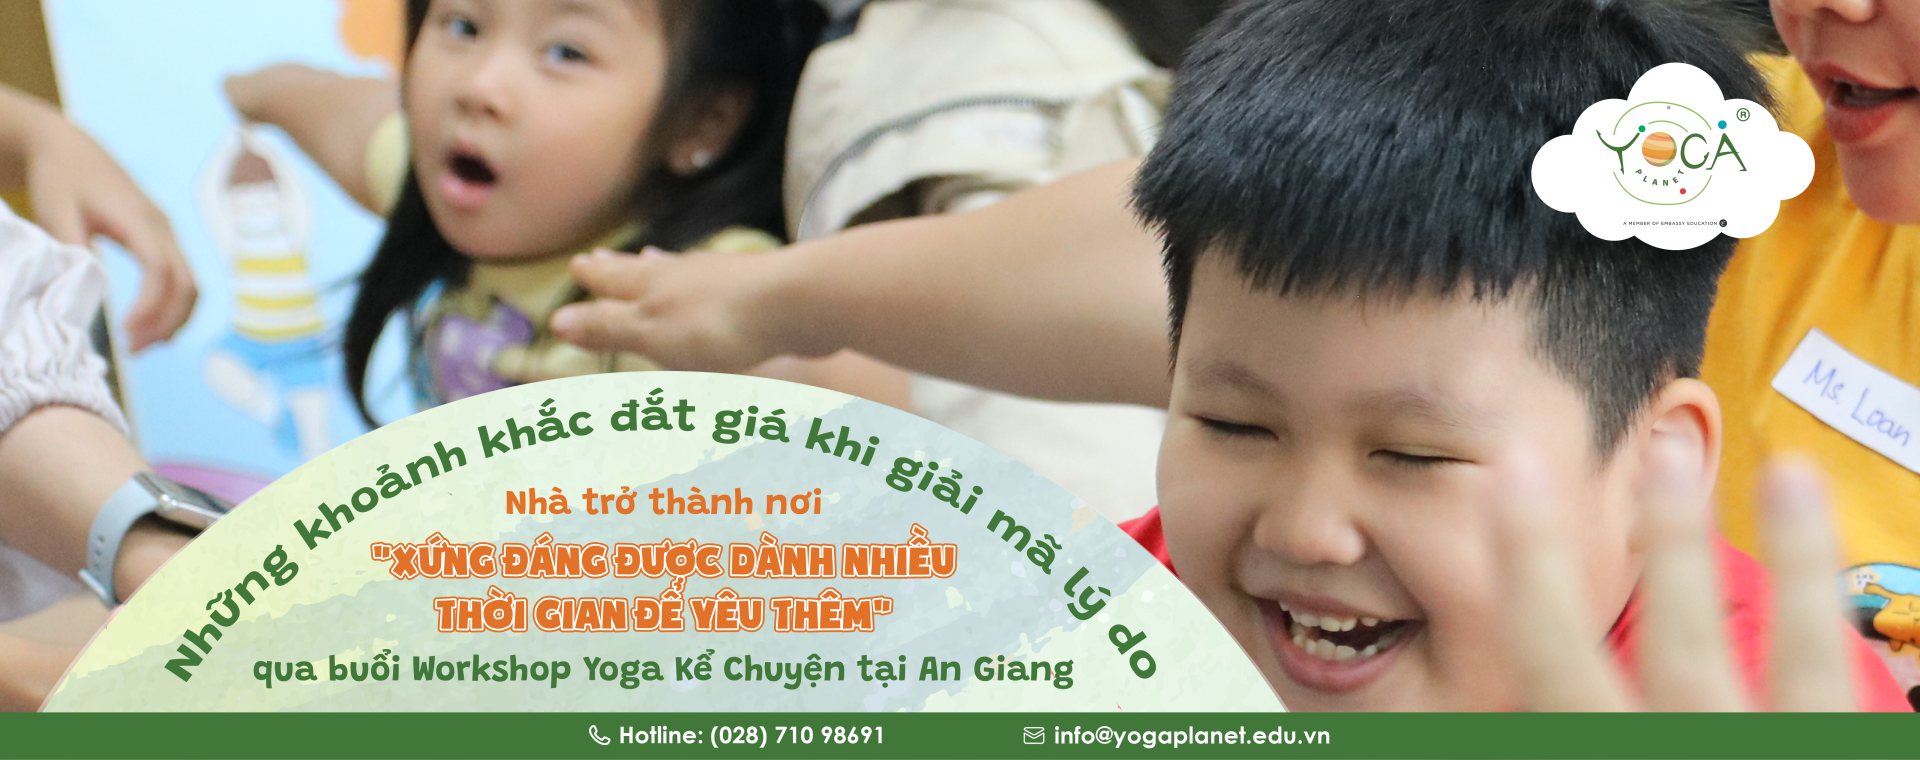 Yoga Trẻ em tại An GIang - Yoga Kể Chuyện dành cho trẻ